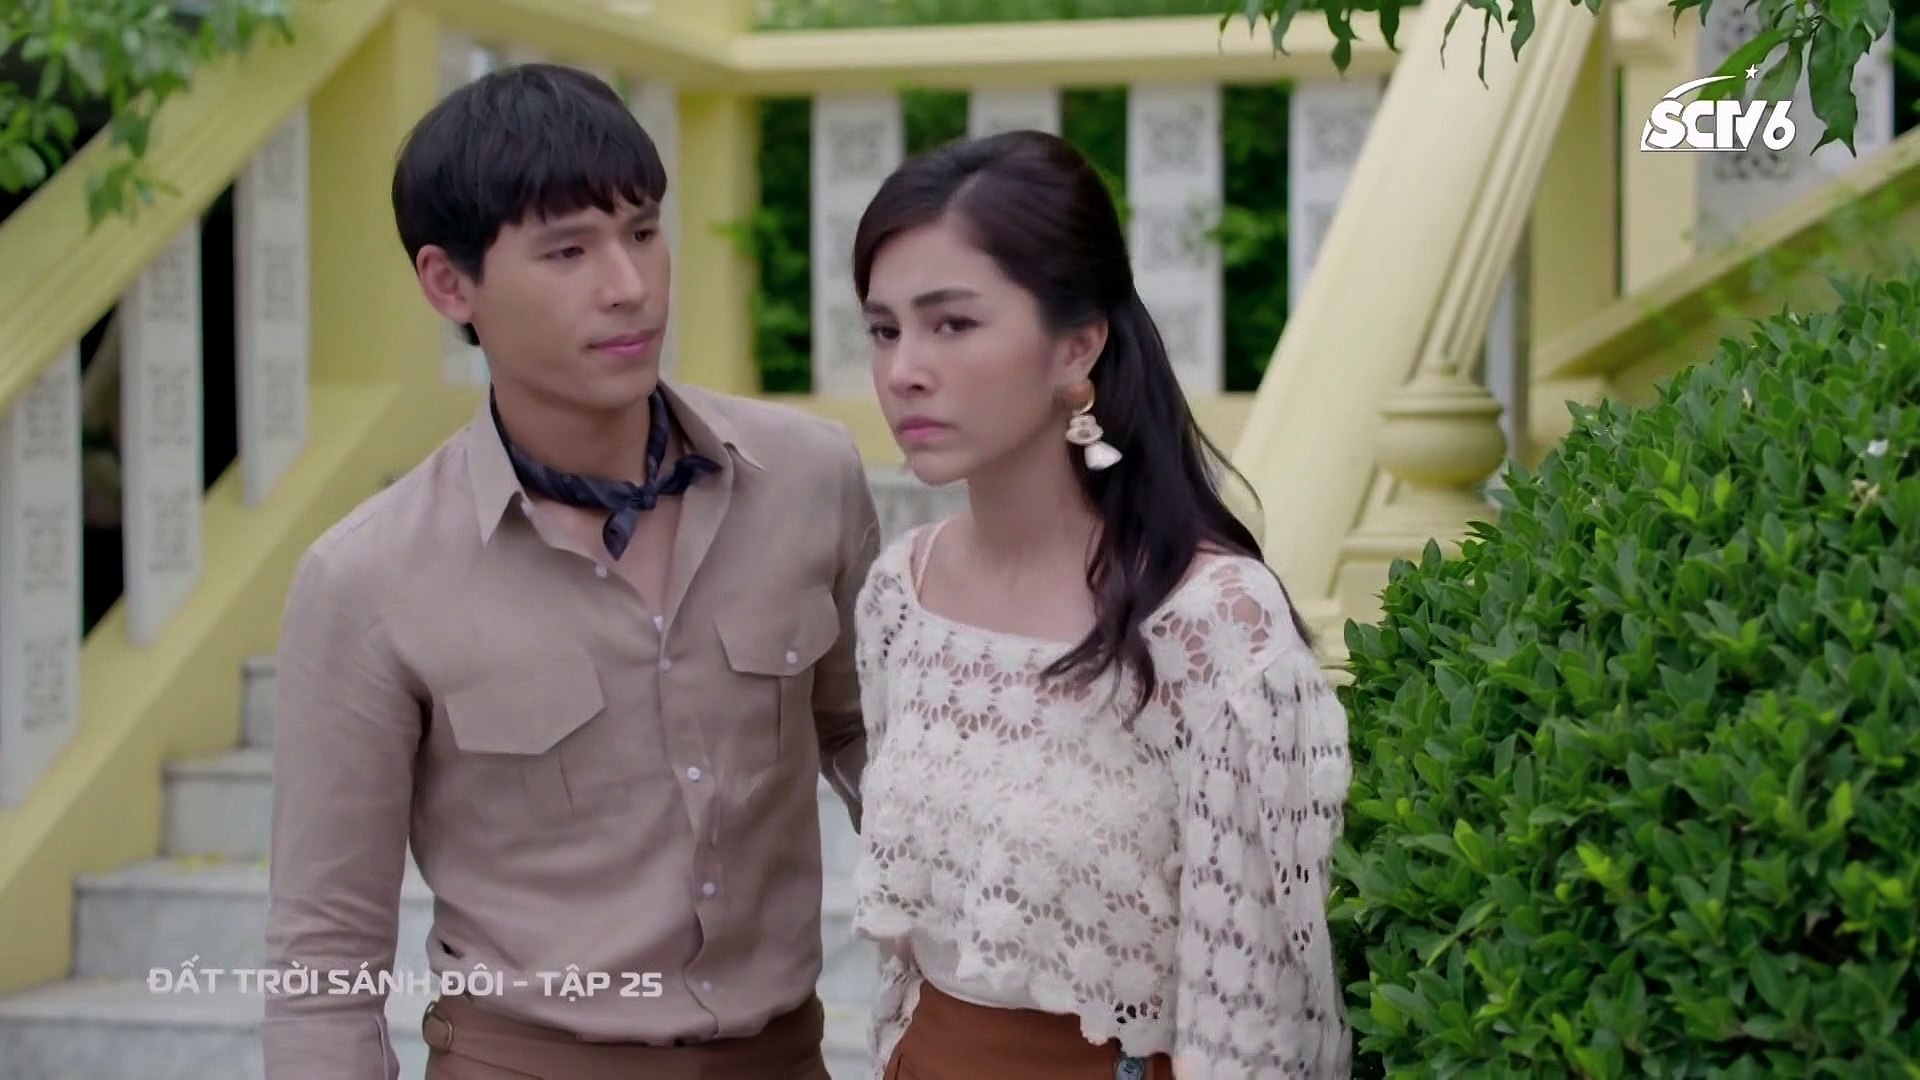 Đất trời sánh đôi Tập 25,  bản đẹp, lồng tiếng, phim Thái Lan, đang chiếu trên SCTV6